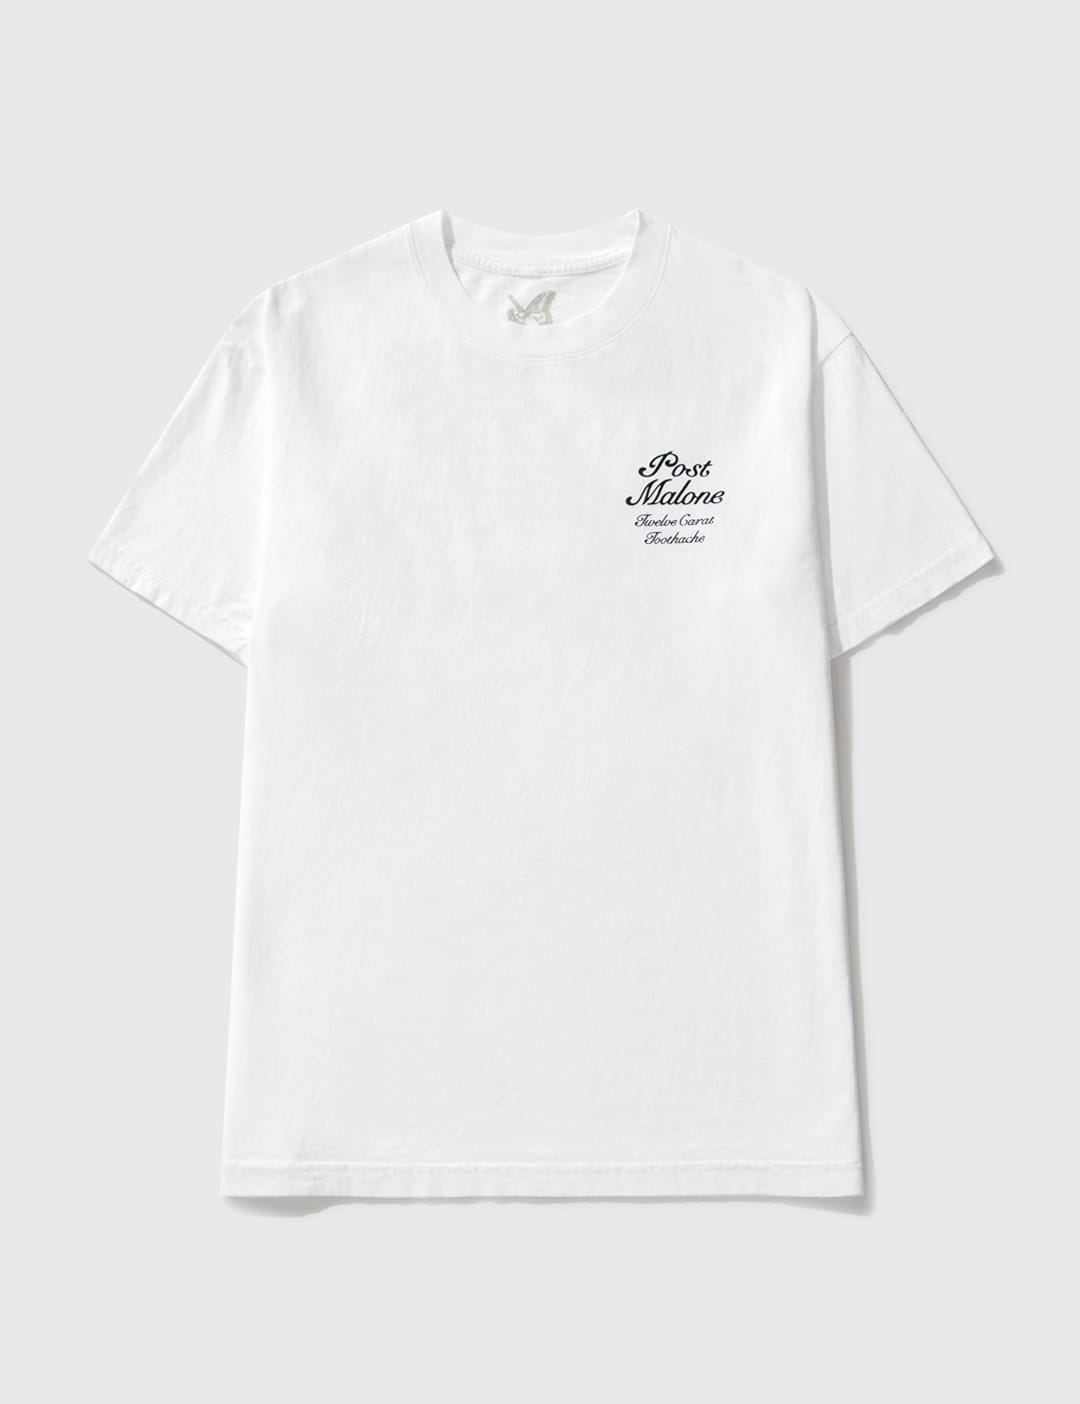 Post Malone x Verdy - Post Malone x Verdy T-shirt | HBX - Globally 